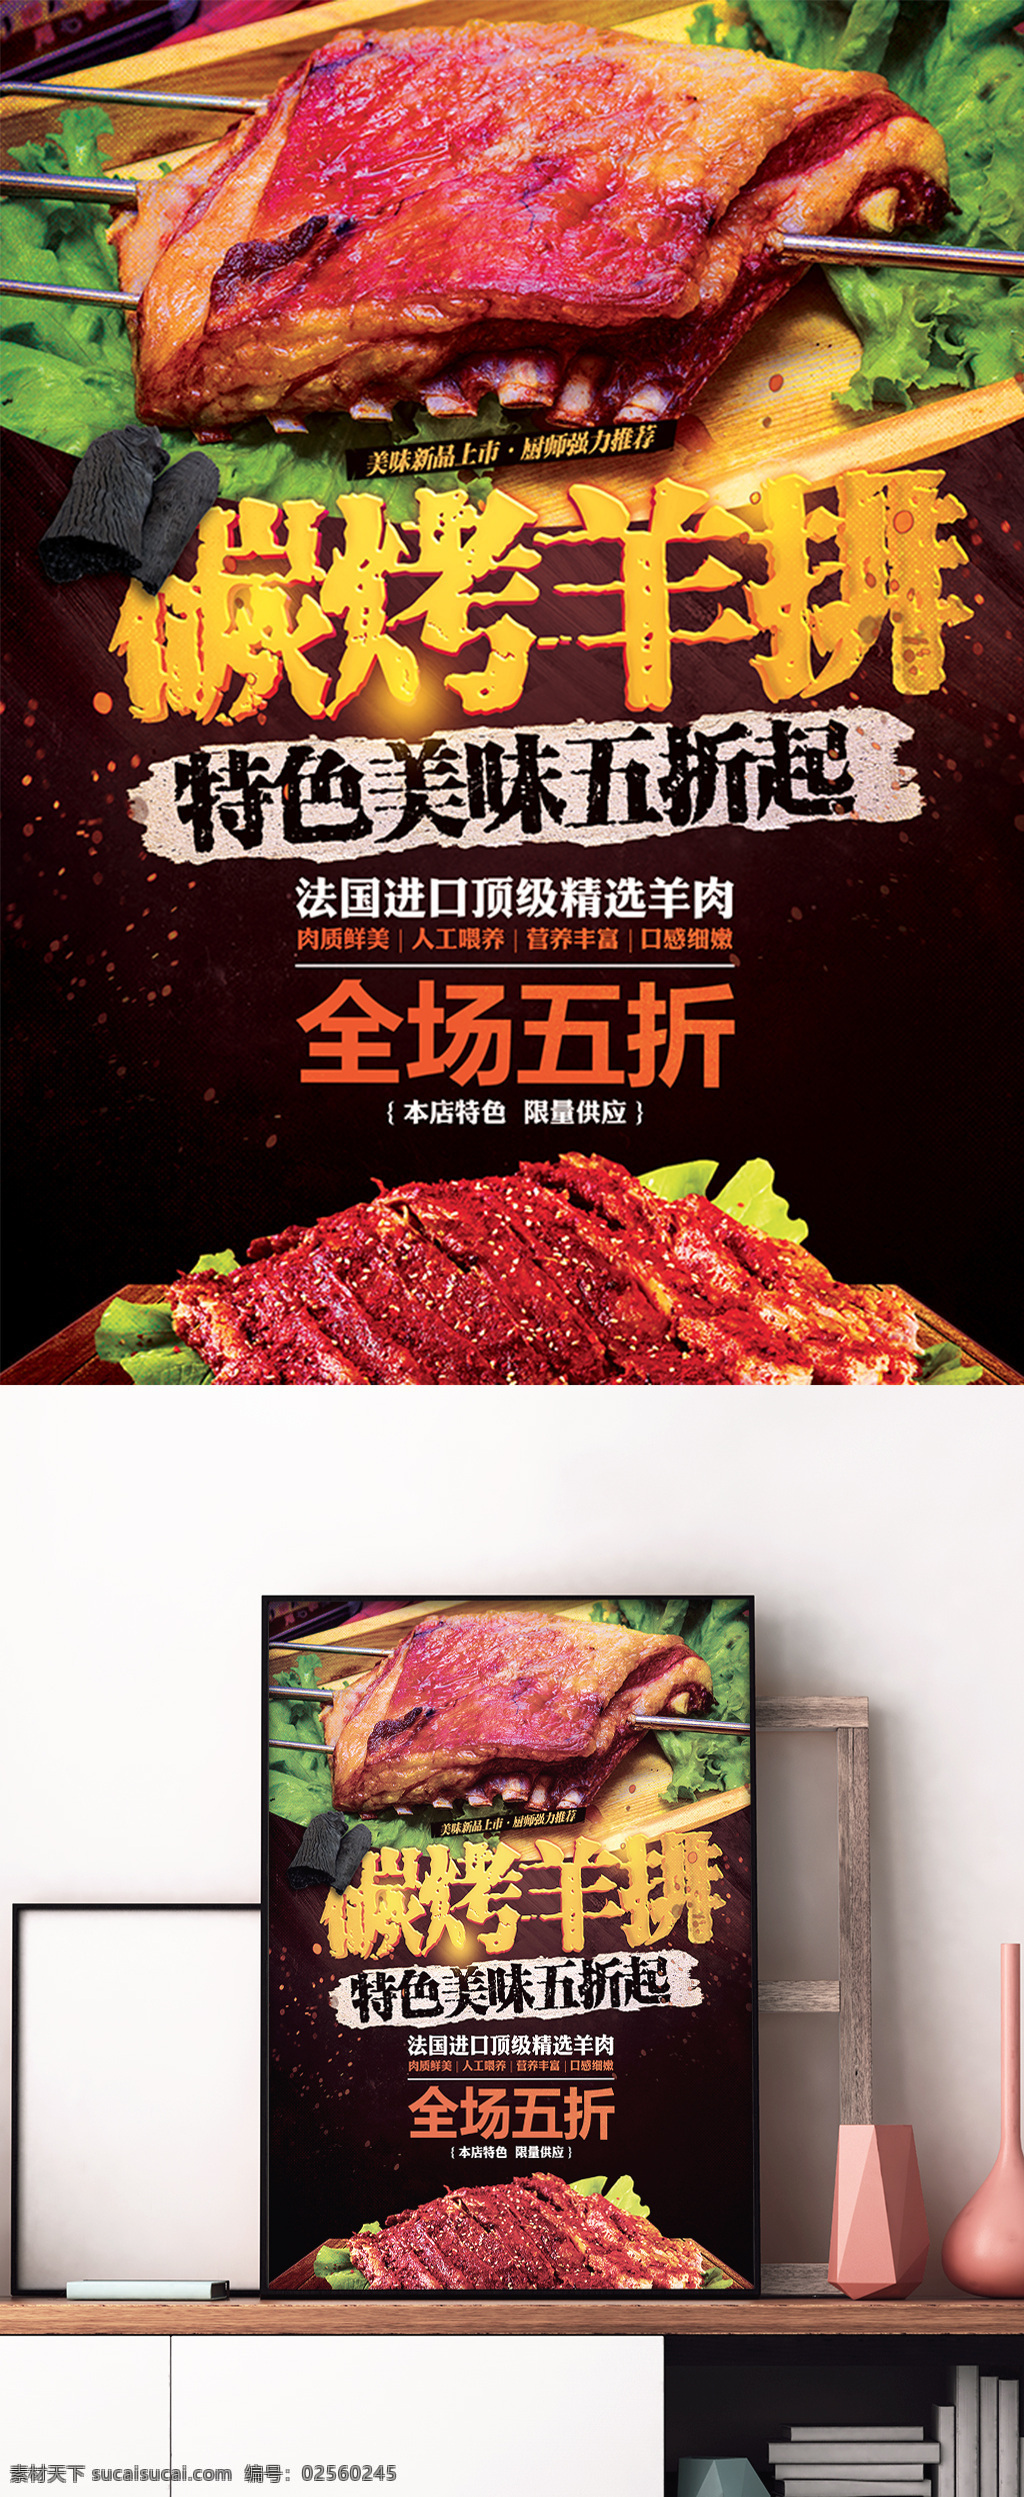 碳 烤羊 排 烧烤 bbq 美食 促销 海报 炭烤 羊排 烤肉 宣传 展板